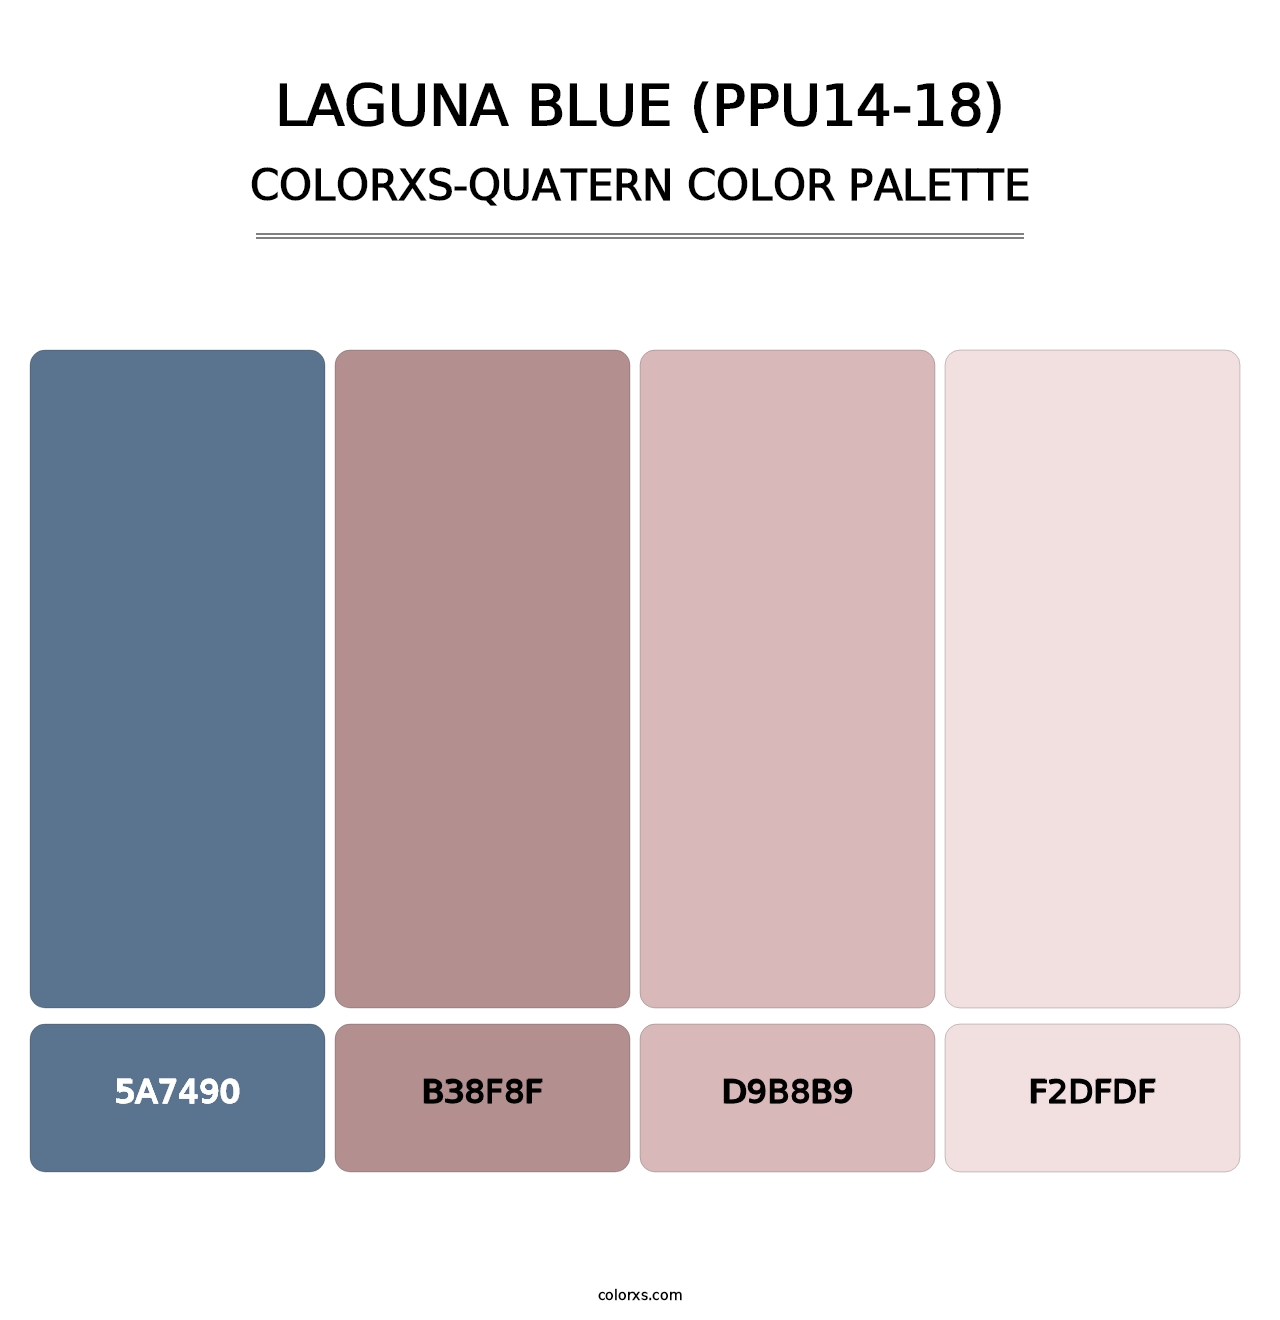 Laguna Blue (PPU14-18) - Colorxs Quatern Palette